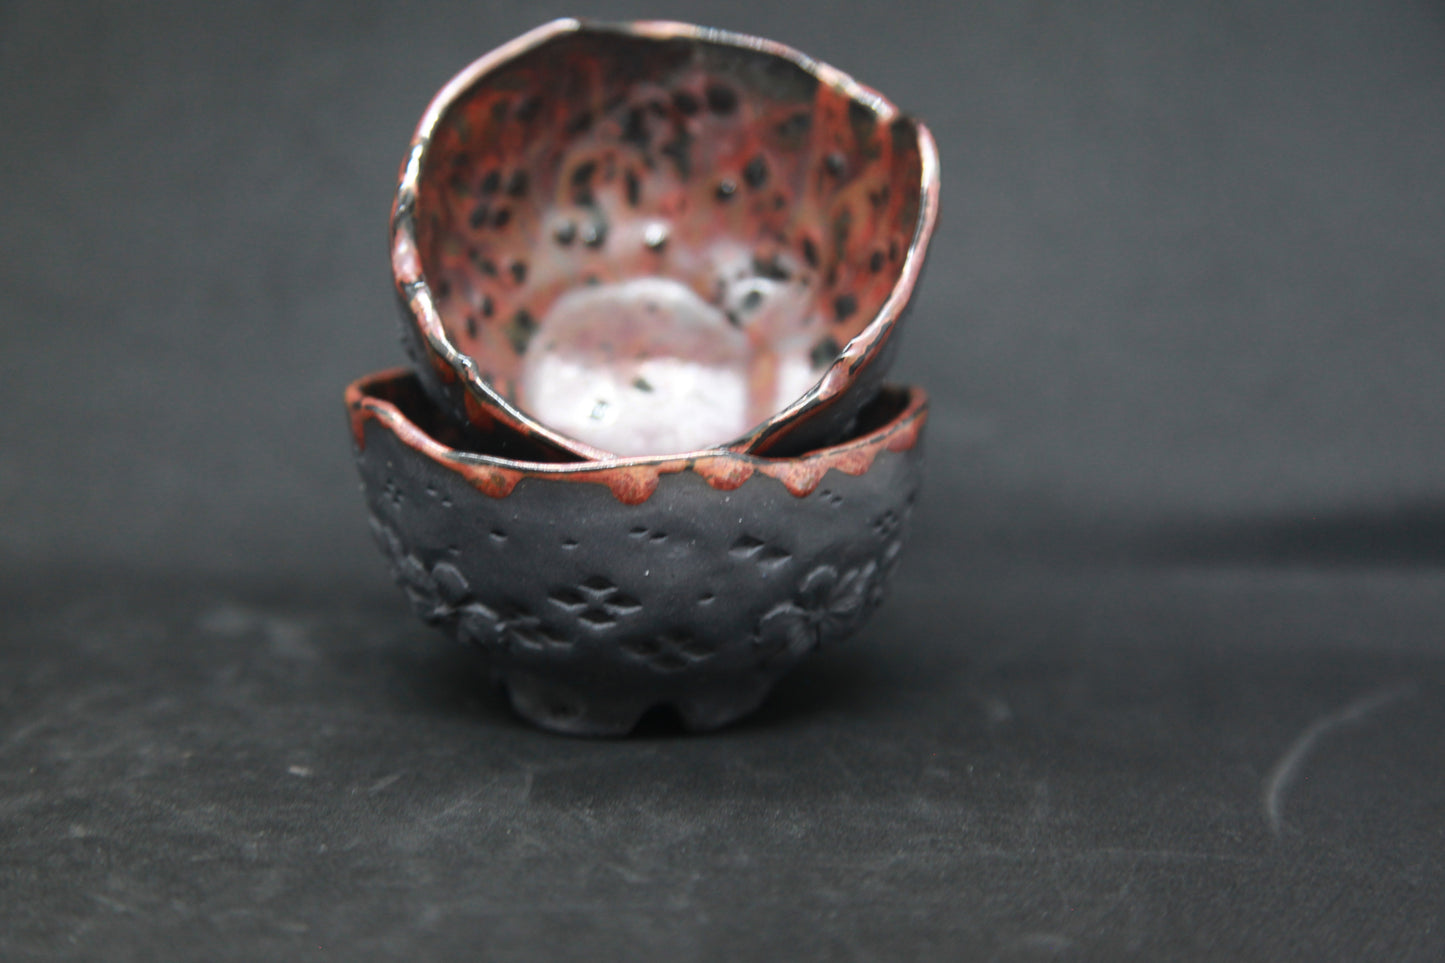 Tasses rouge carmin sur porcelaine noire - motifs de fleurs